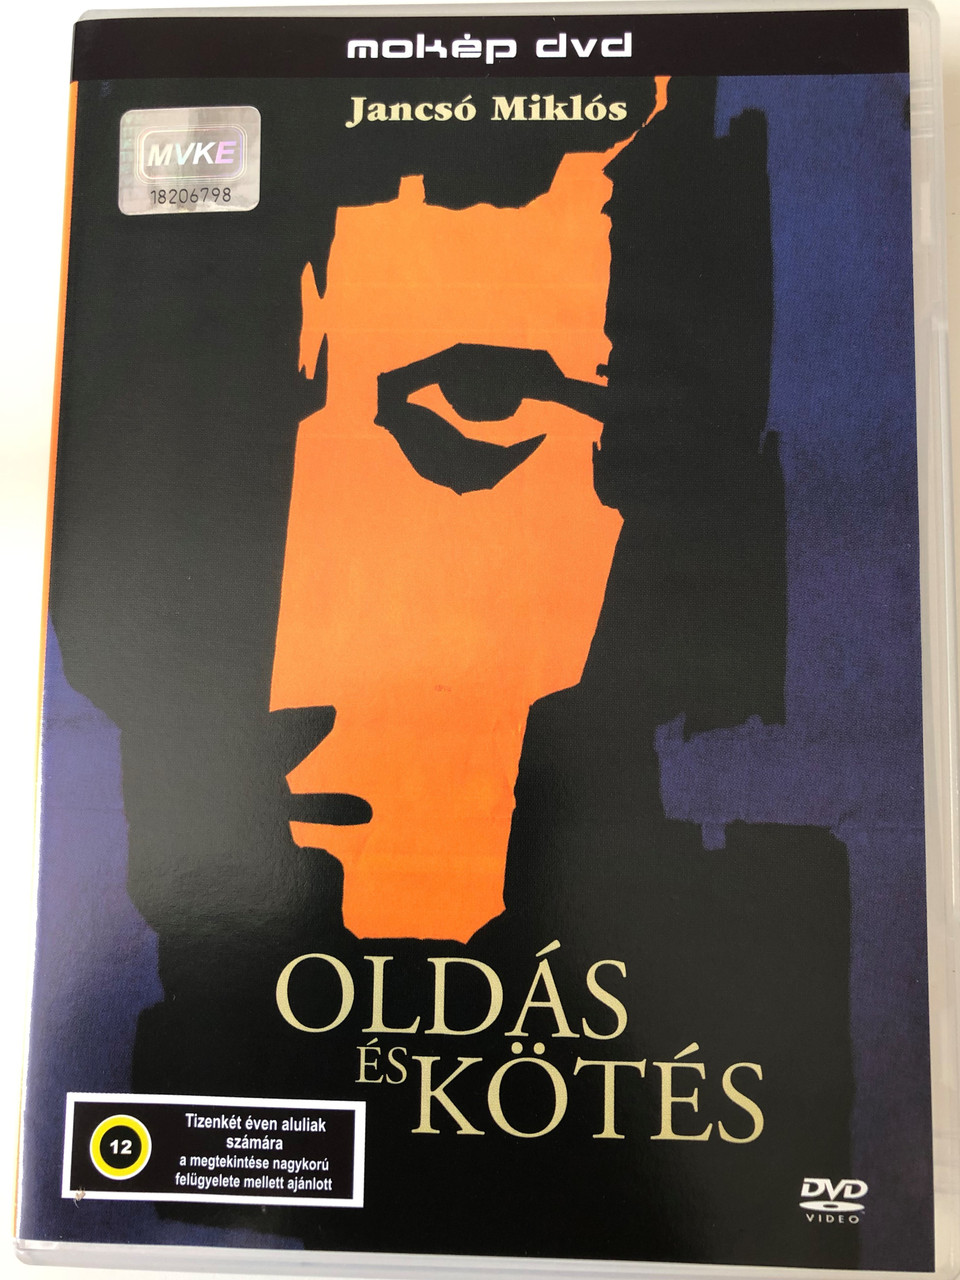 Oldás és kötés DVD 1963 Cantata / Directed by Jancsó Miklós / Starring:  Zoltán Latinovits, Andor Ajtay, Gyula Bodrogi - bibleinmylanguage